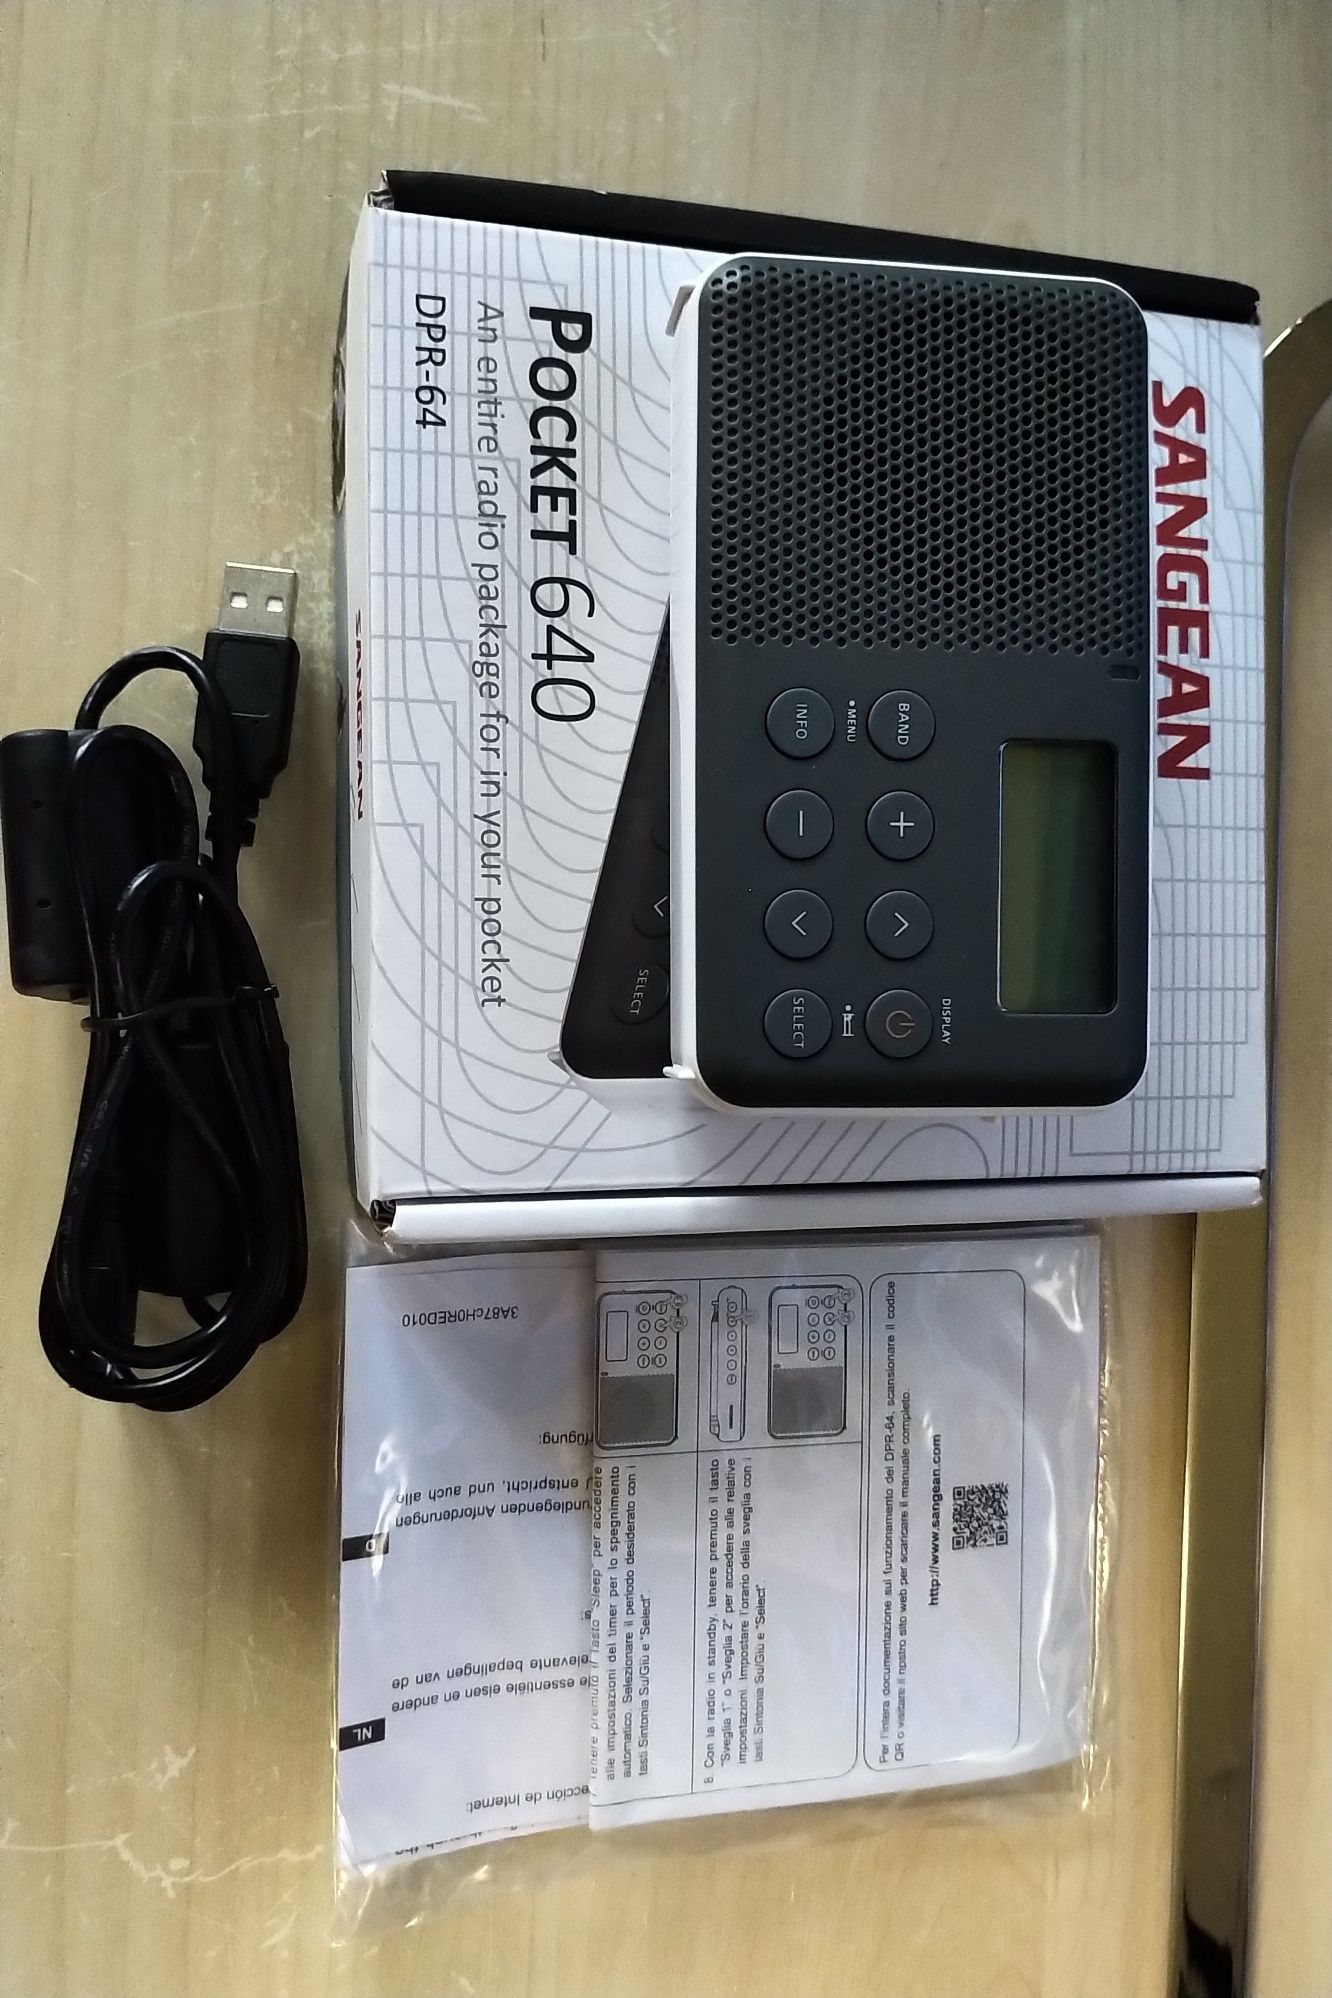 Radioodbiornik SANGEAN DPR-64 (Pocket 640)